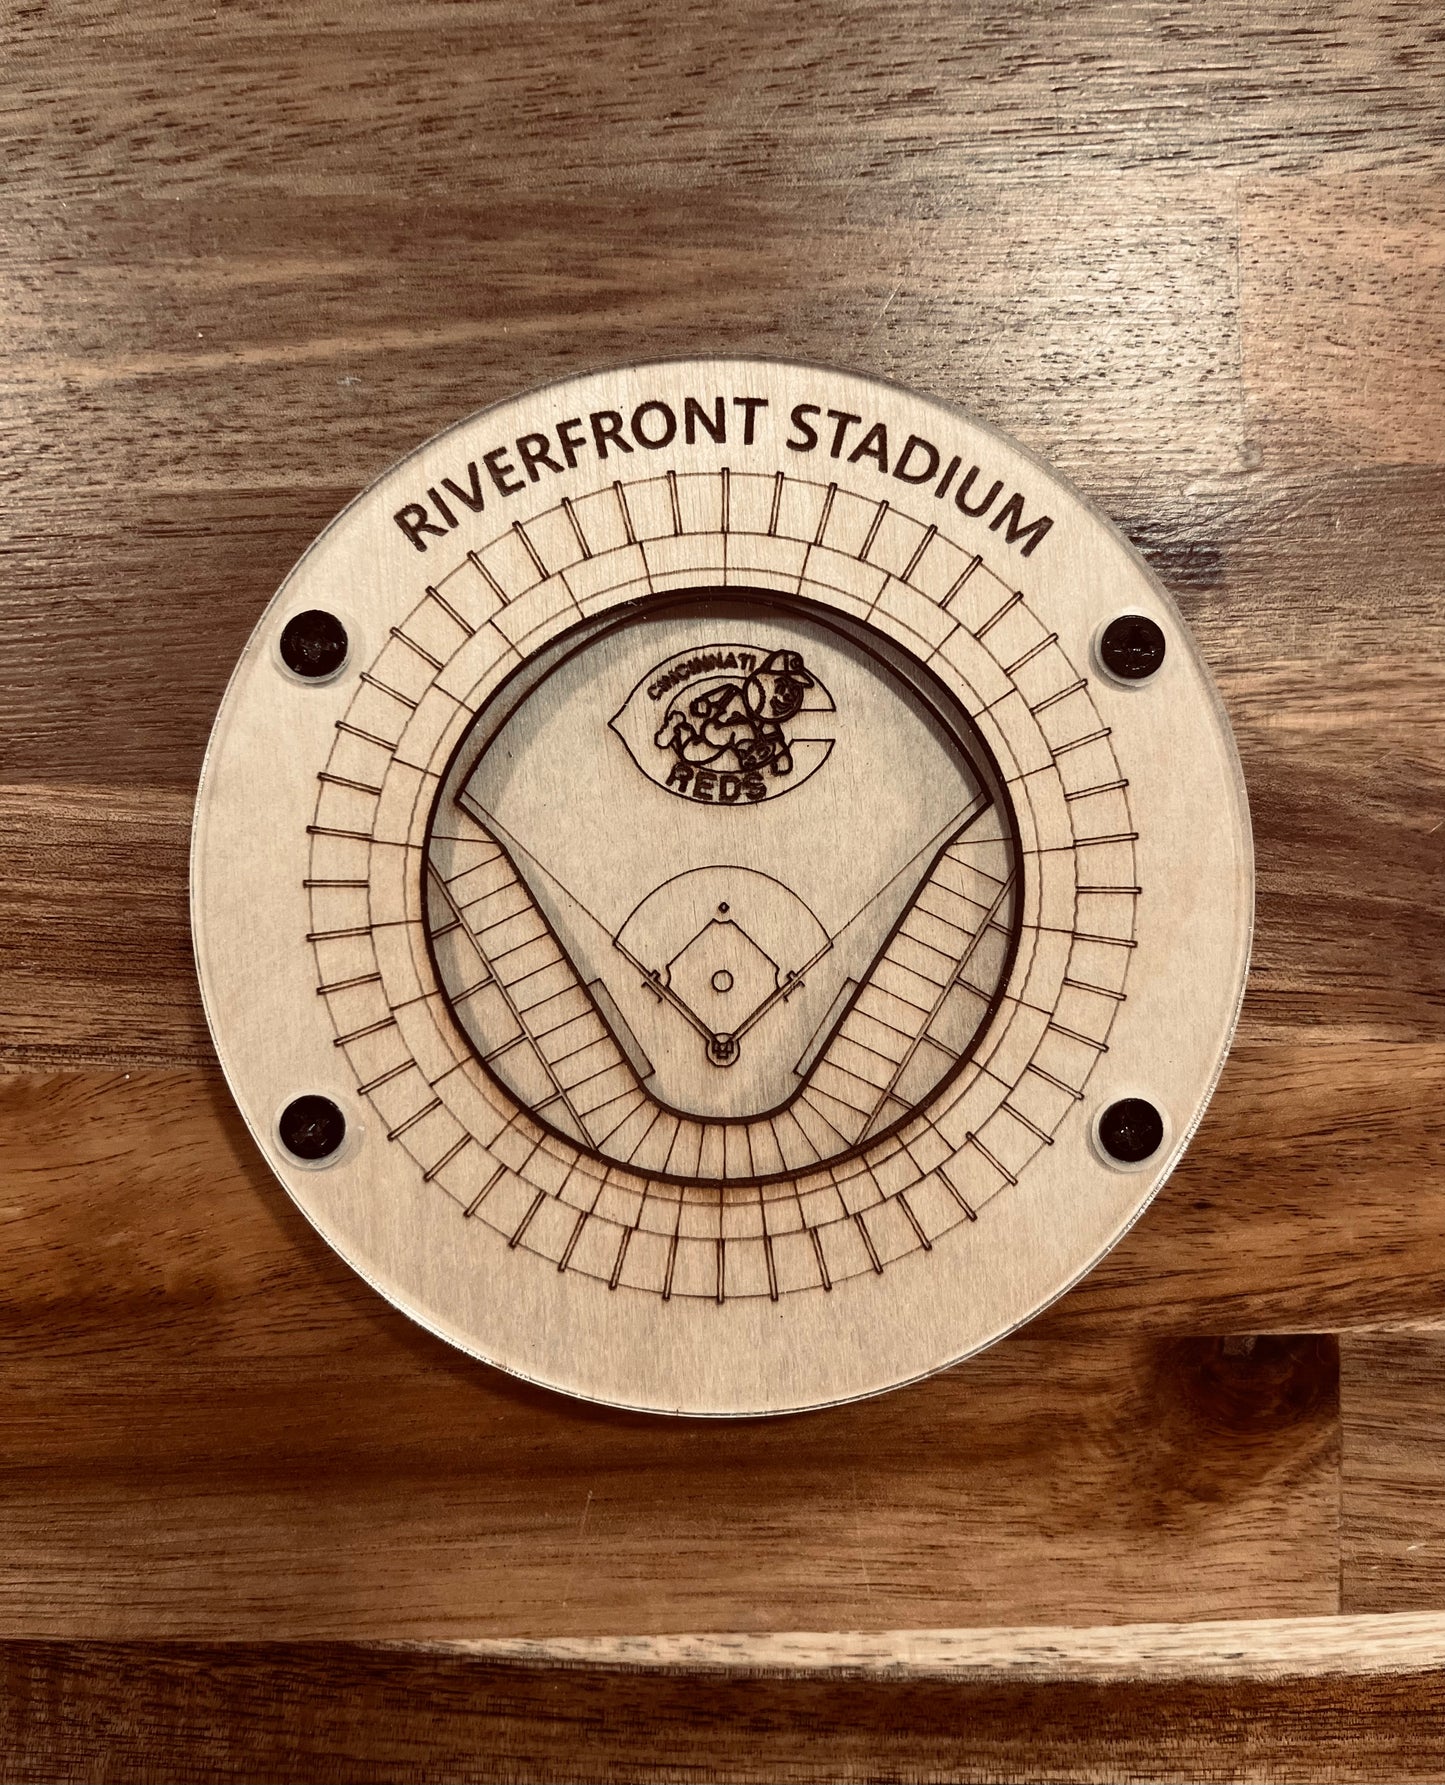 Baseball Stadium Coasters